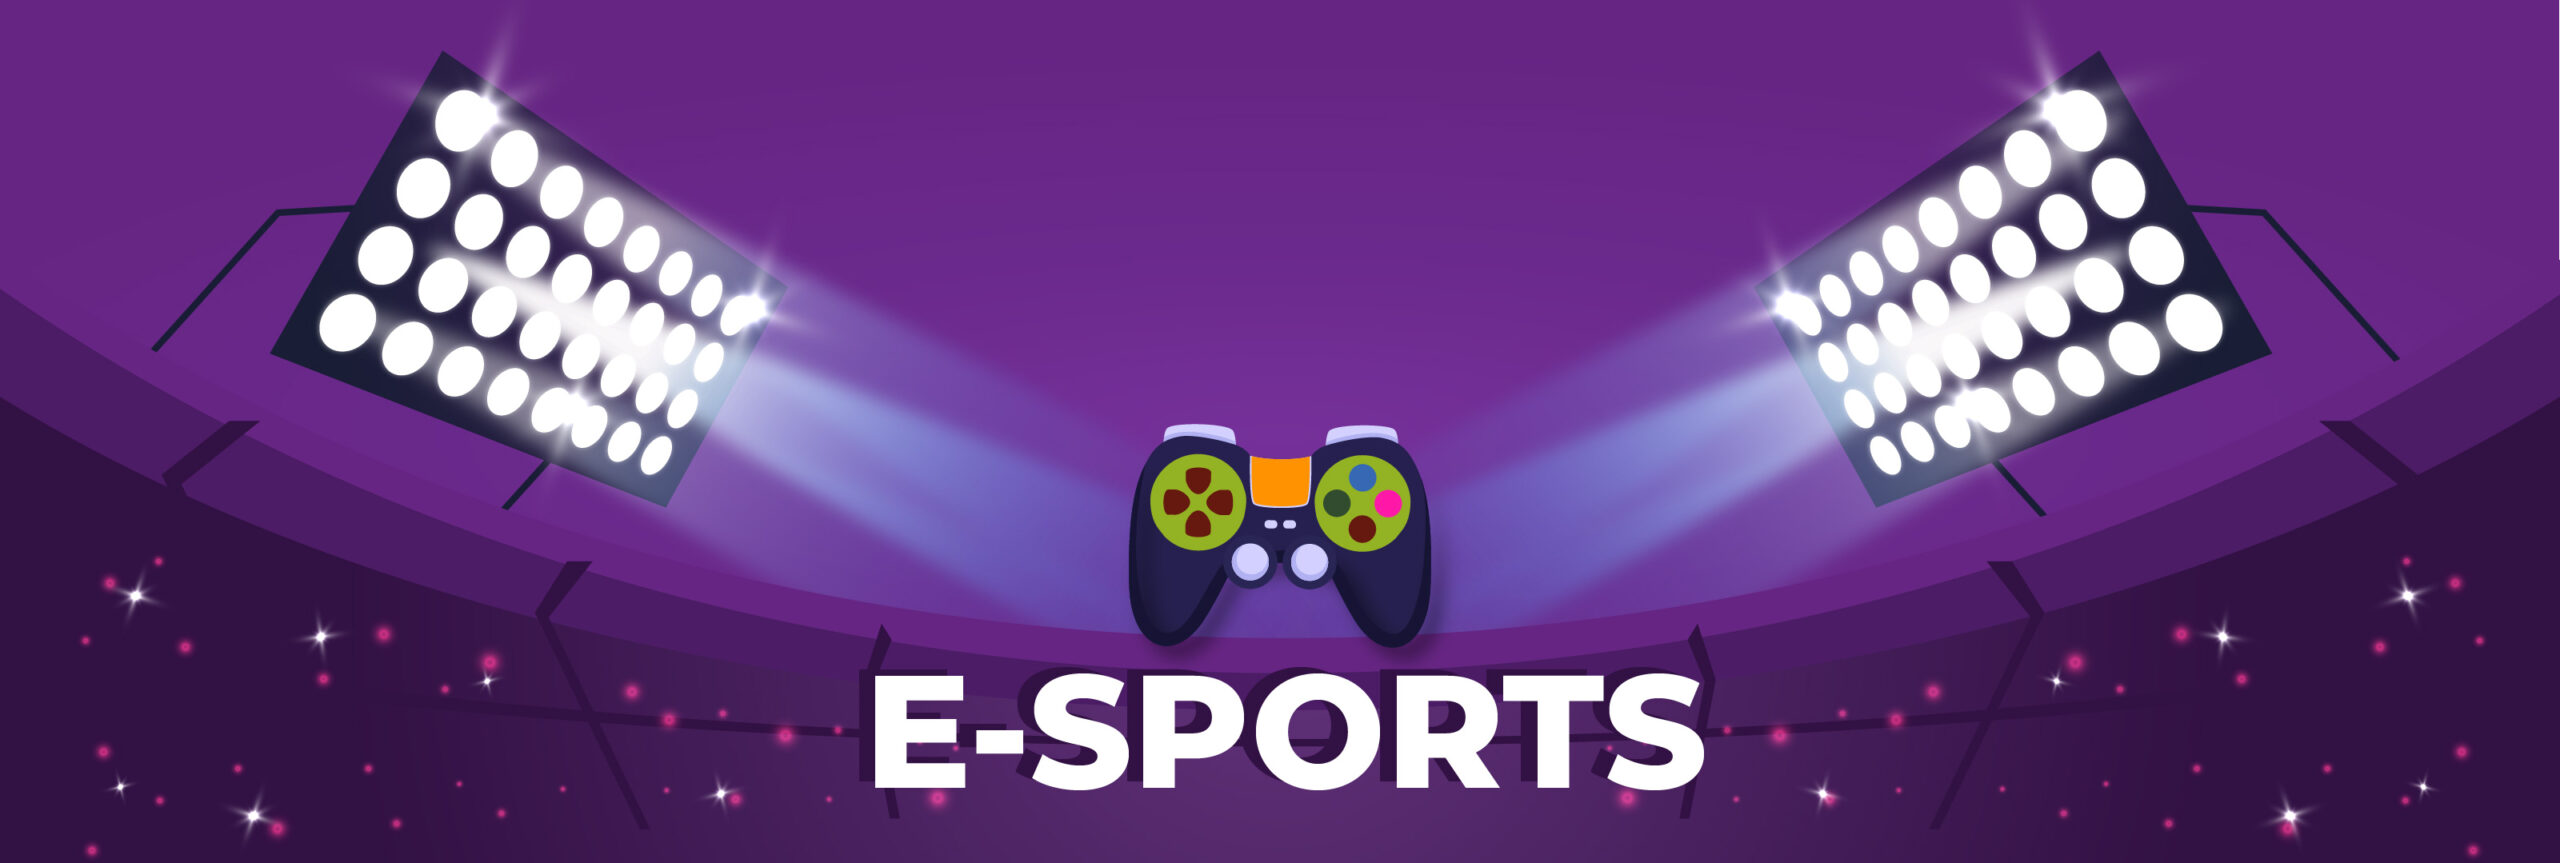 Videogames como esportes, ou melhor, como E-sports – FA.VELA